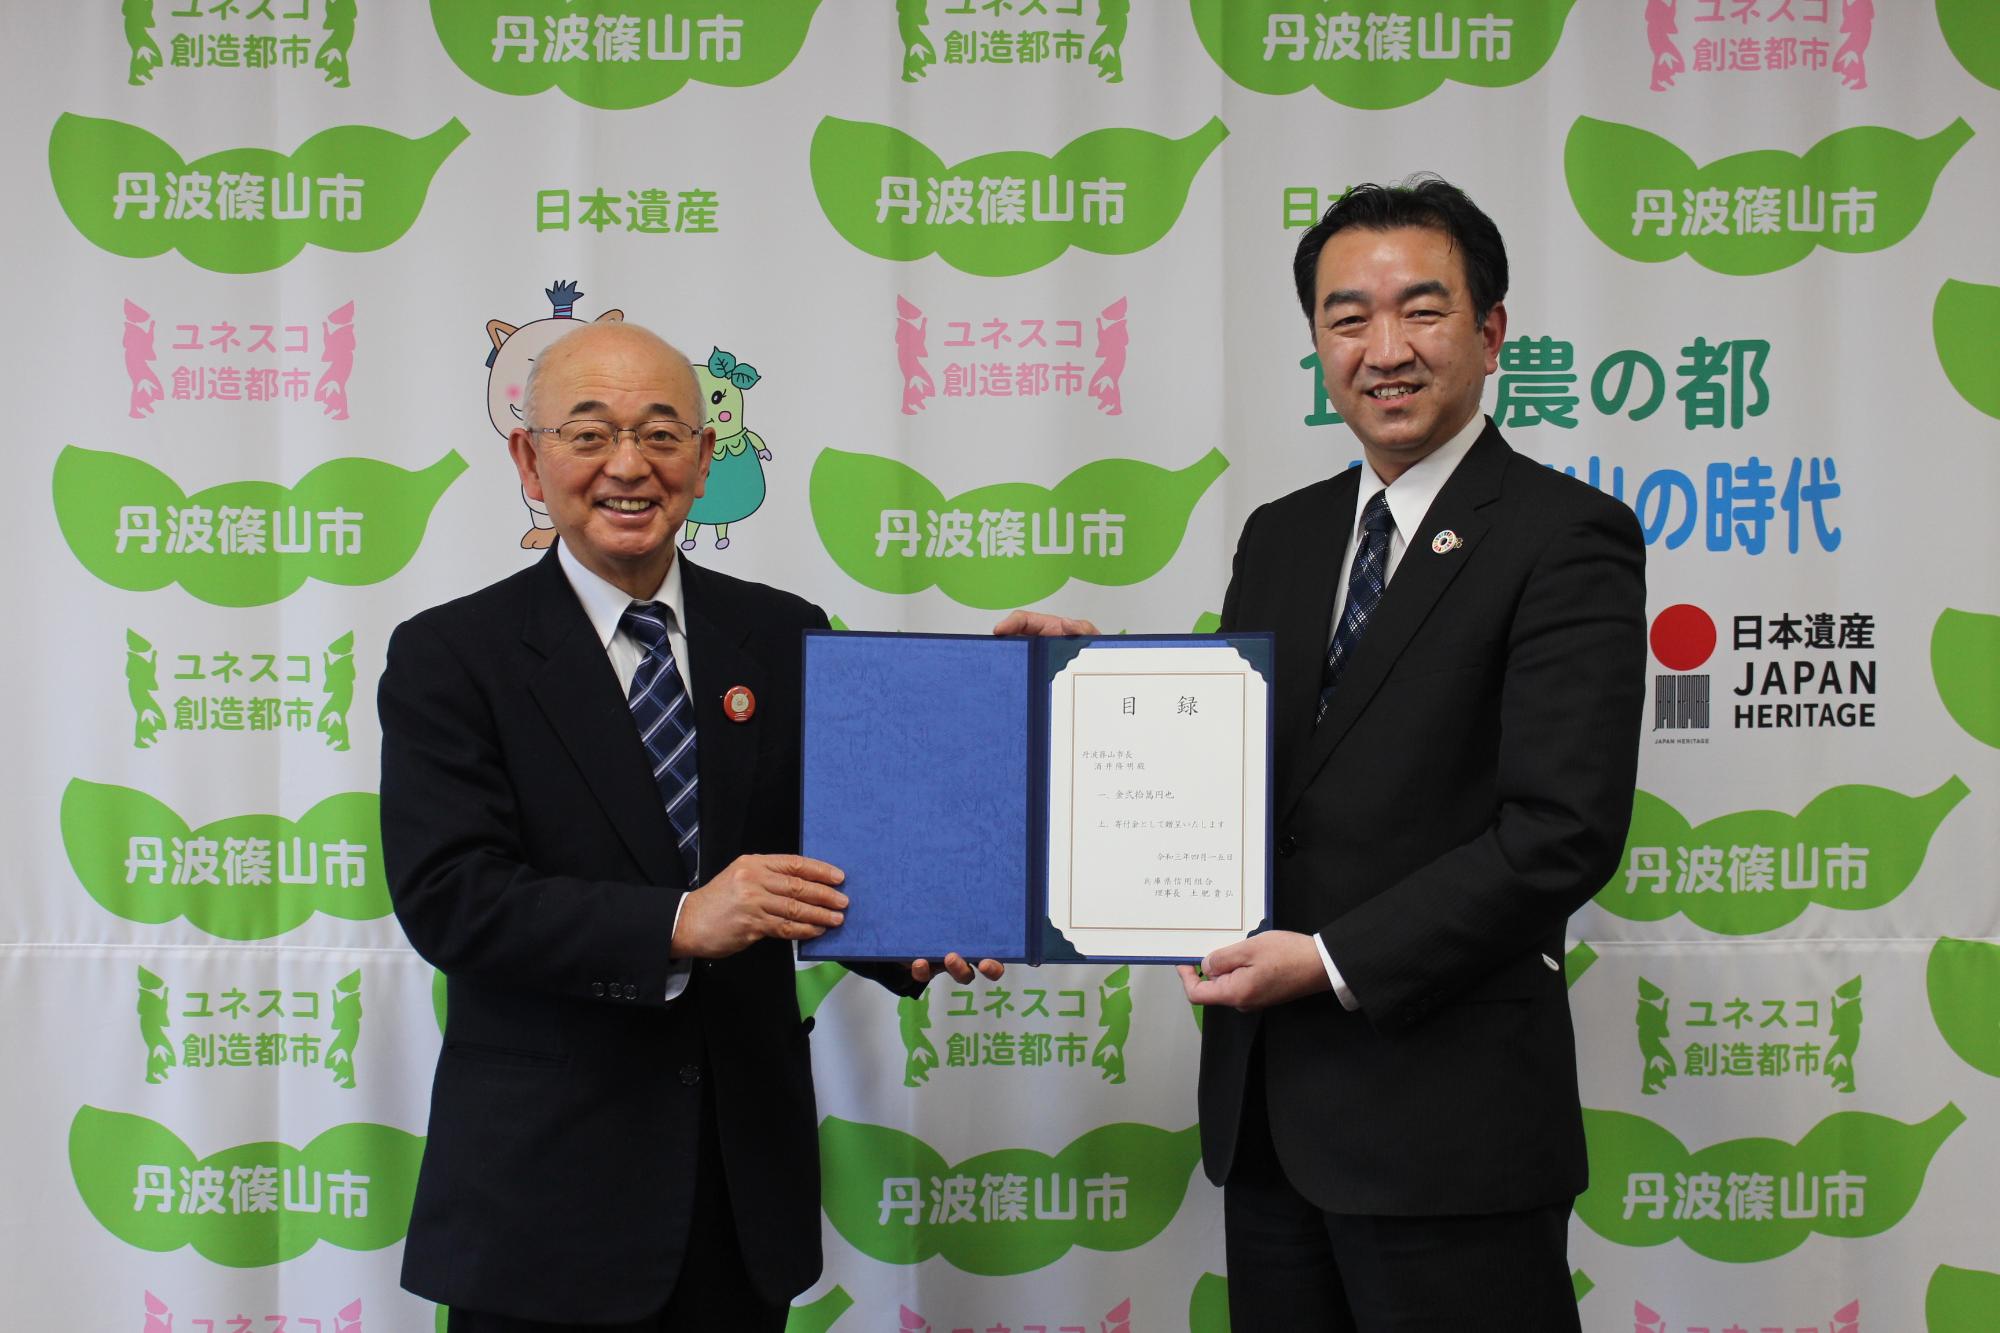 市長と兵庫県信用組合の方が一緒に目録を持って記念撮影している。